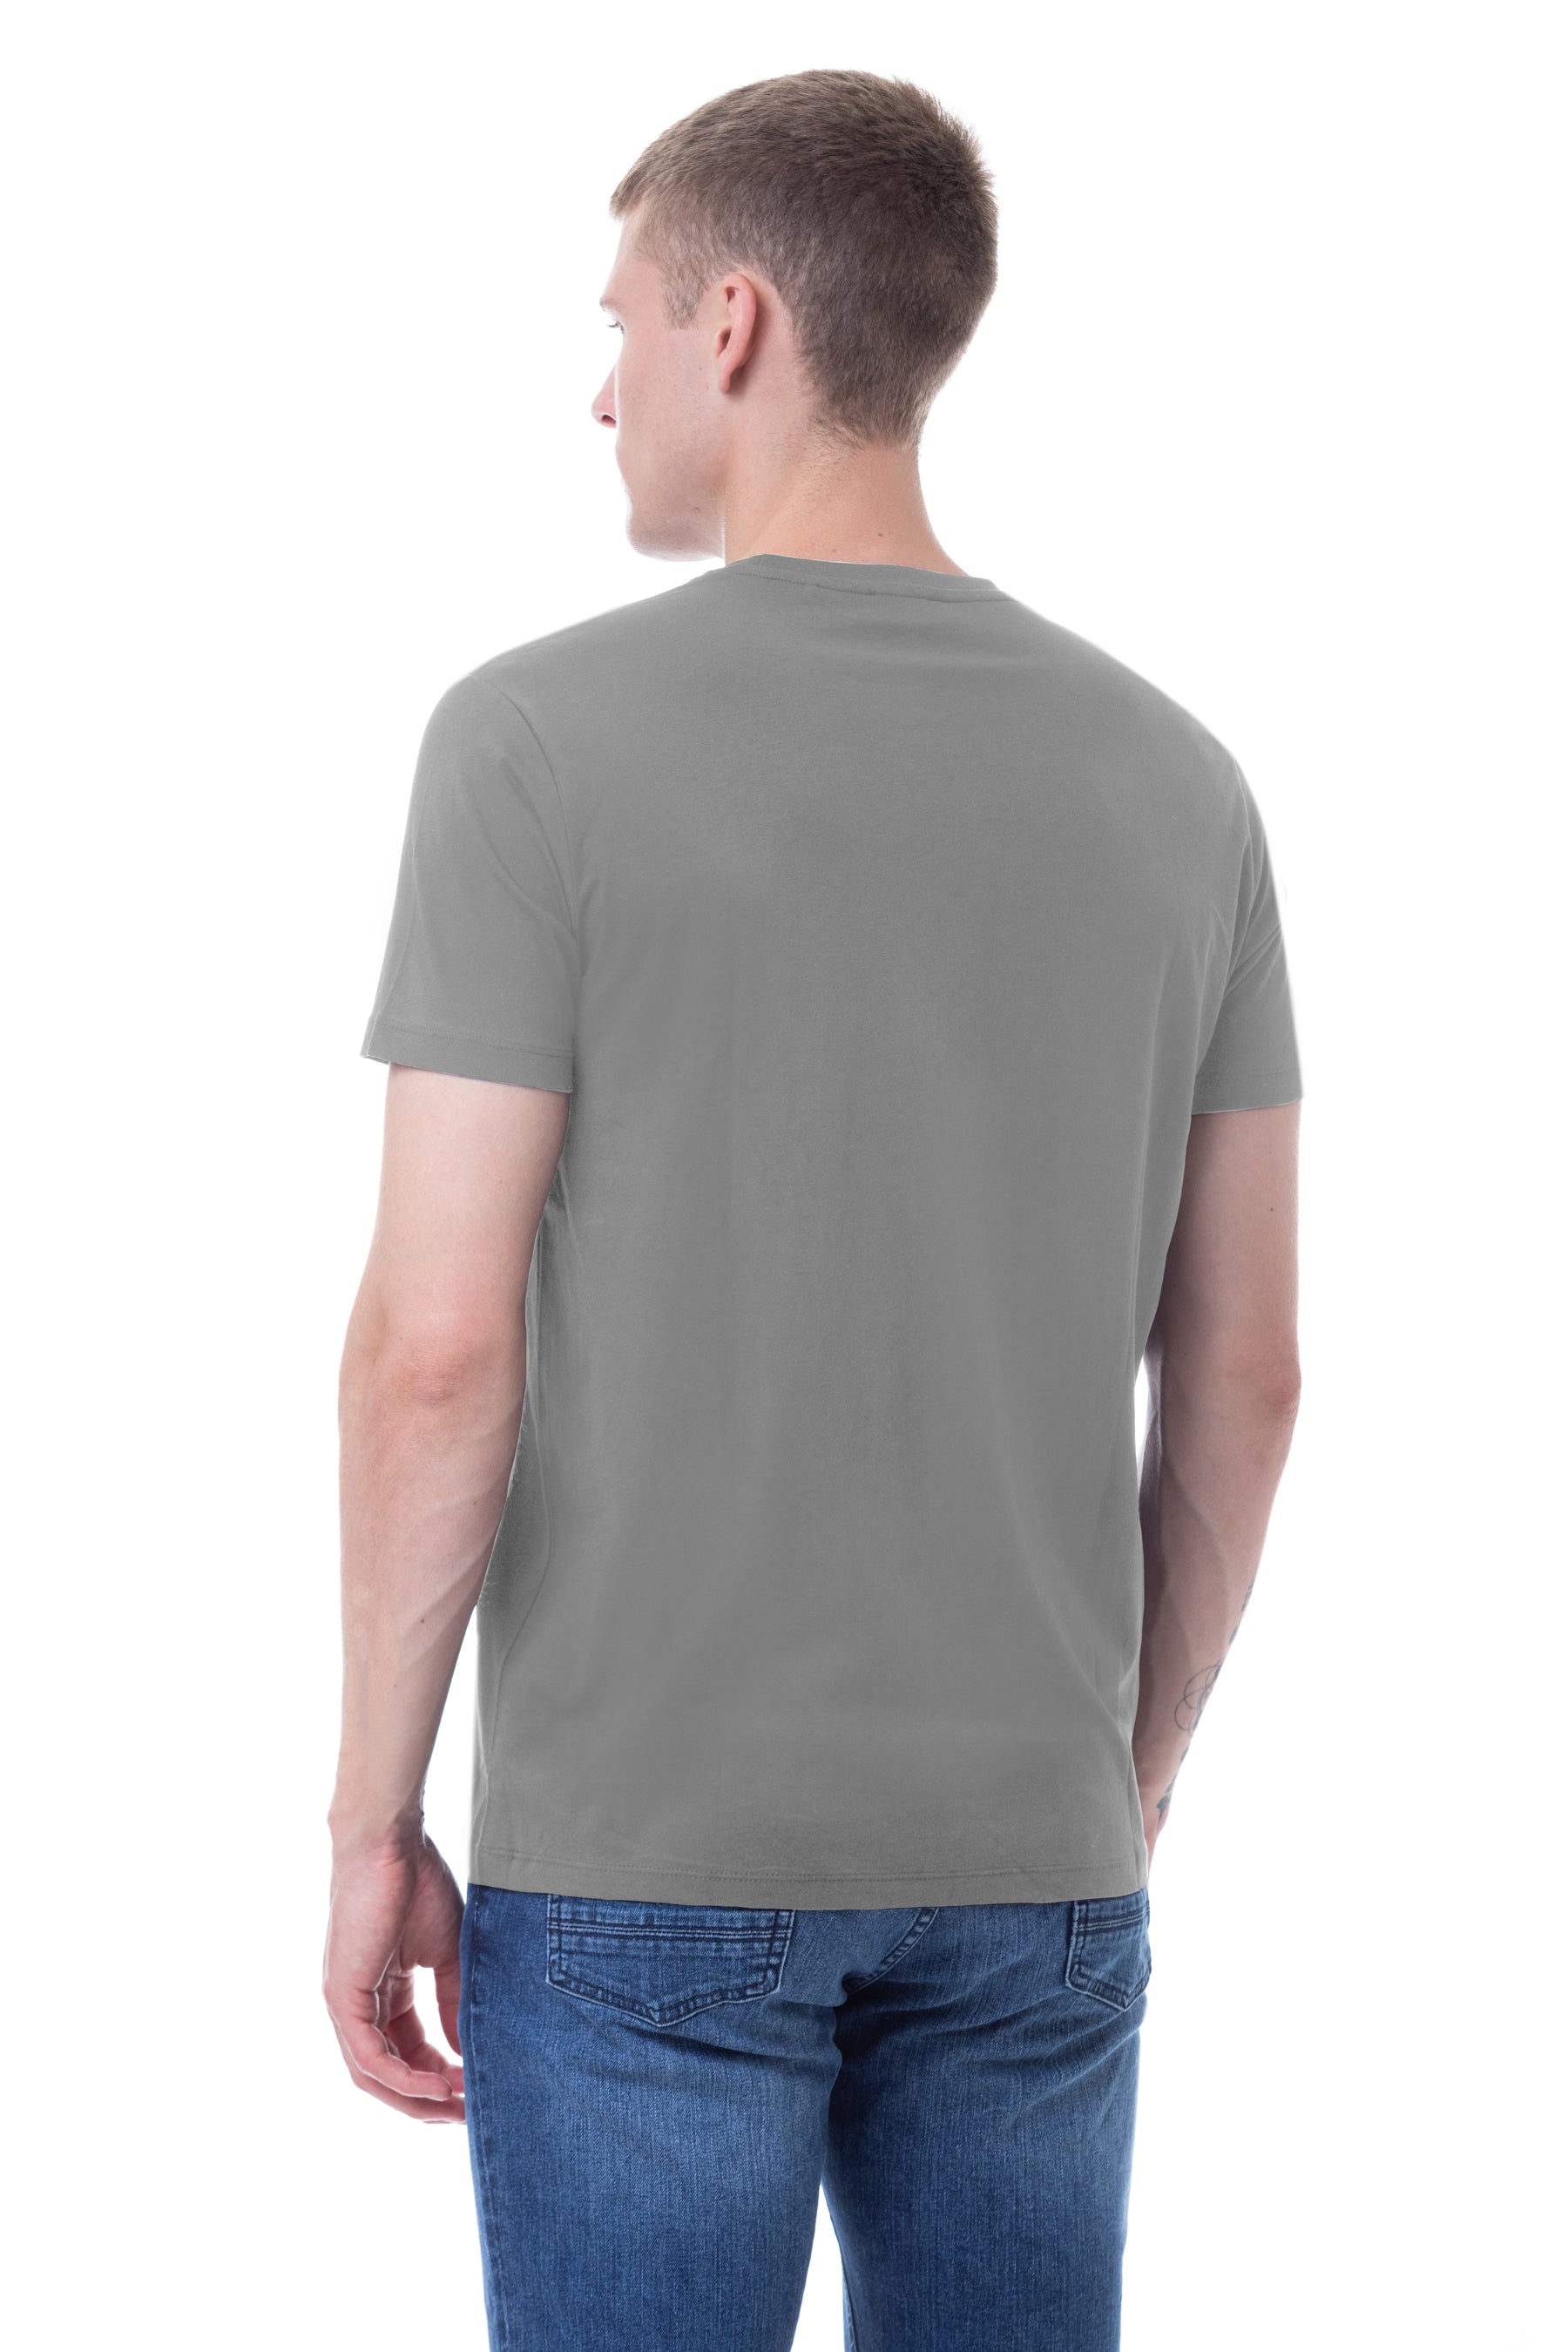 T-shirt girocollo con stampa USPA